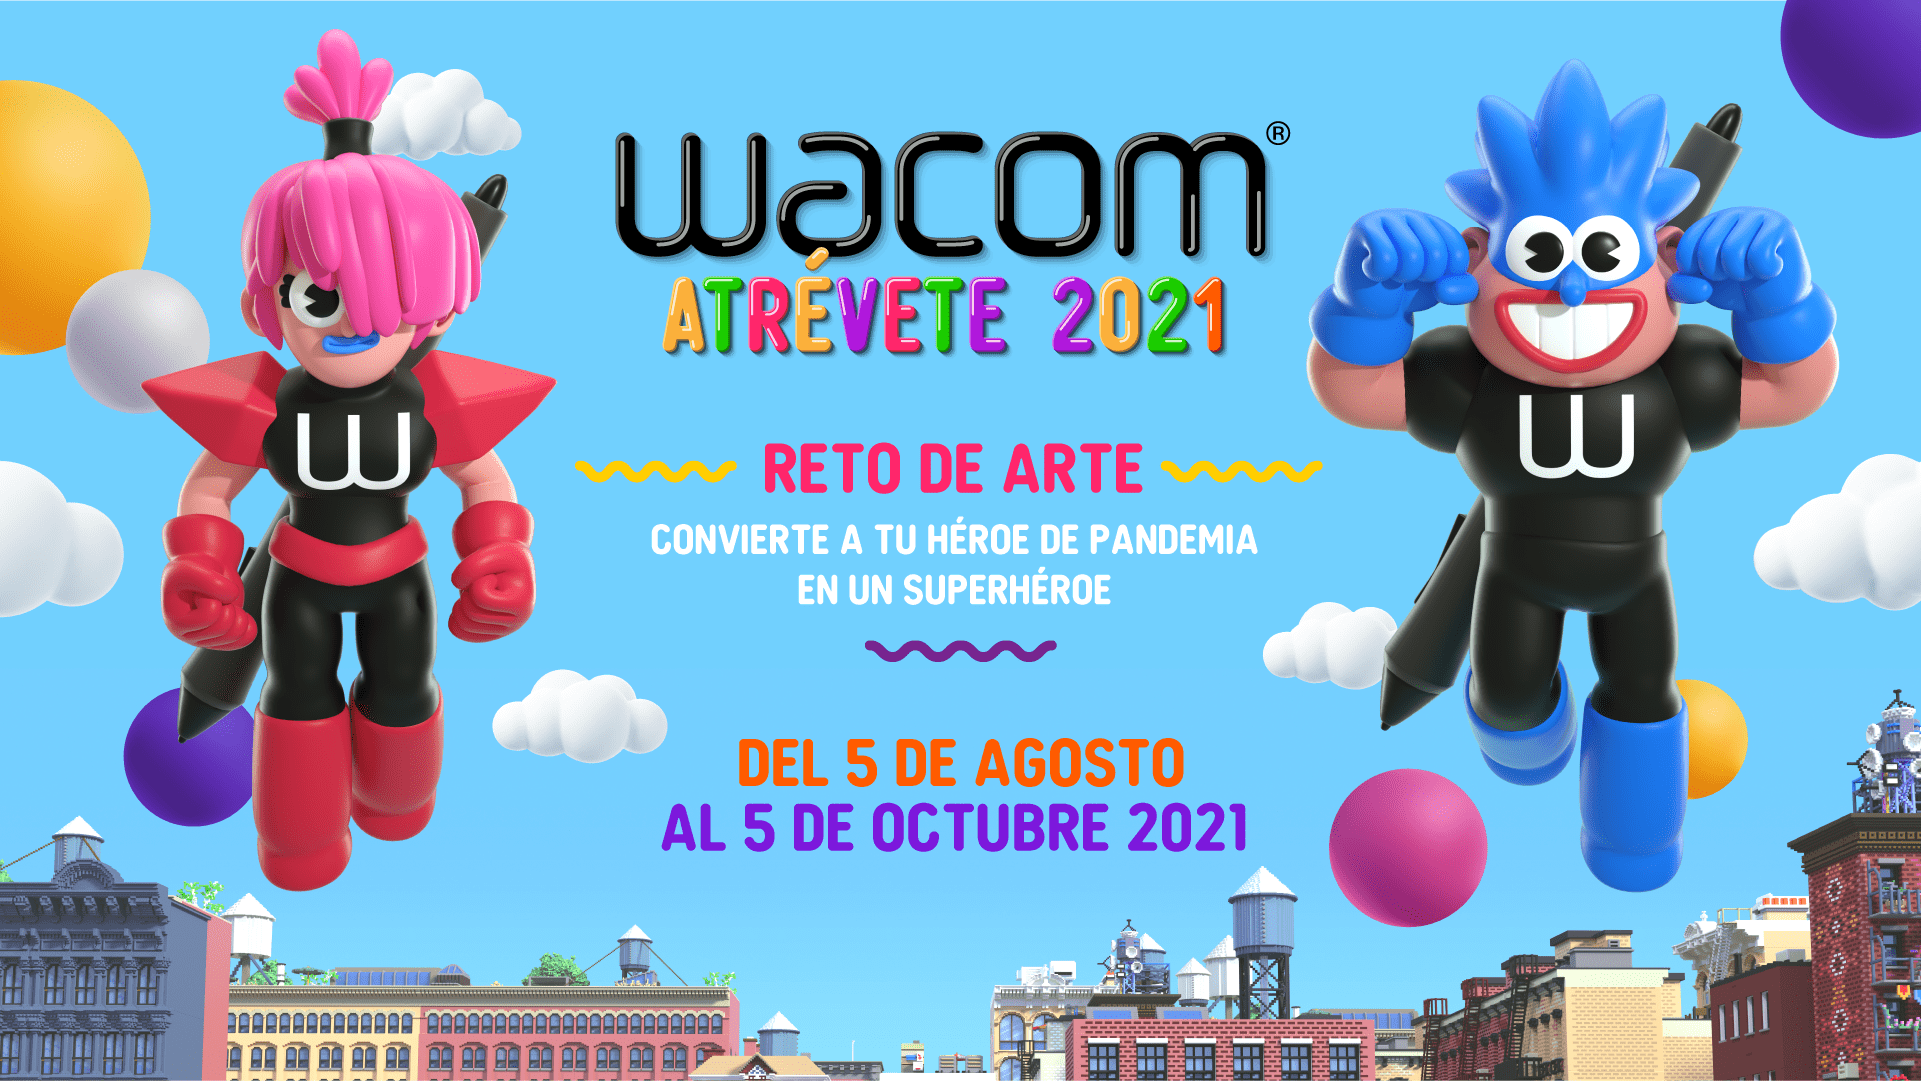 #WacomAtrevete2021